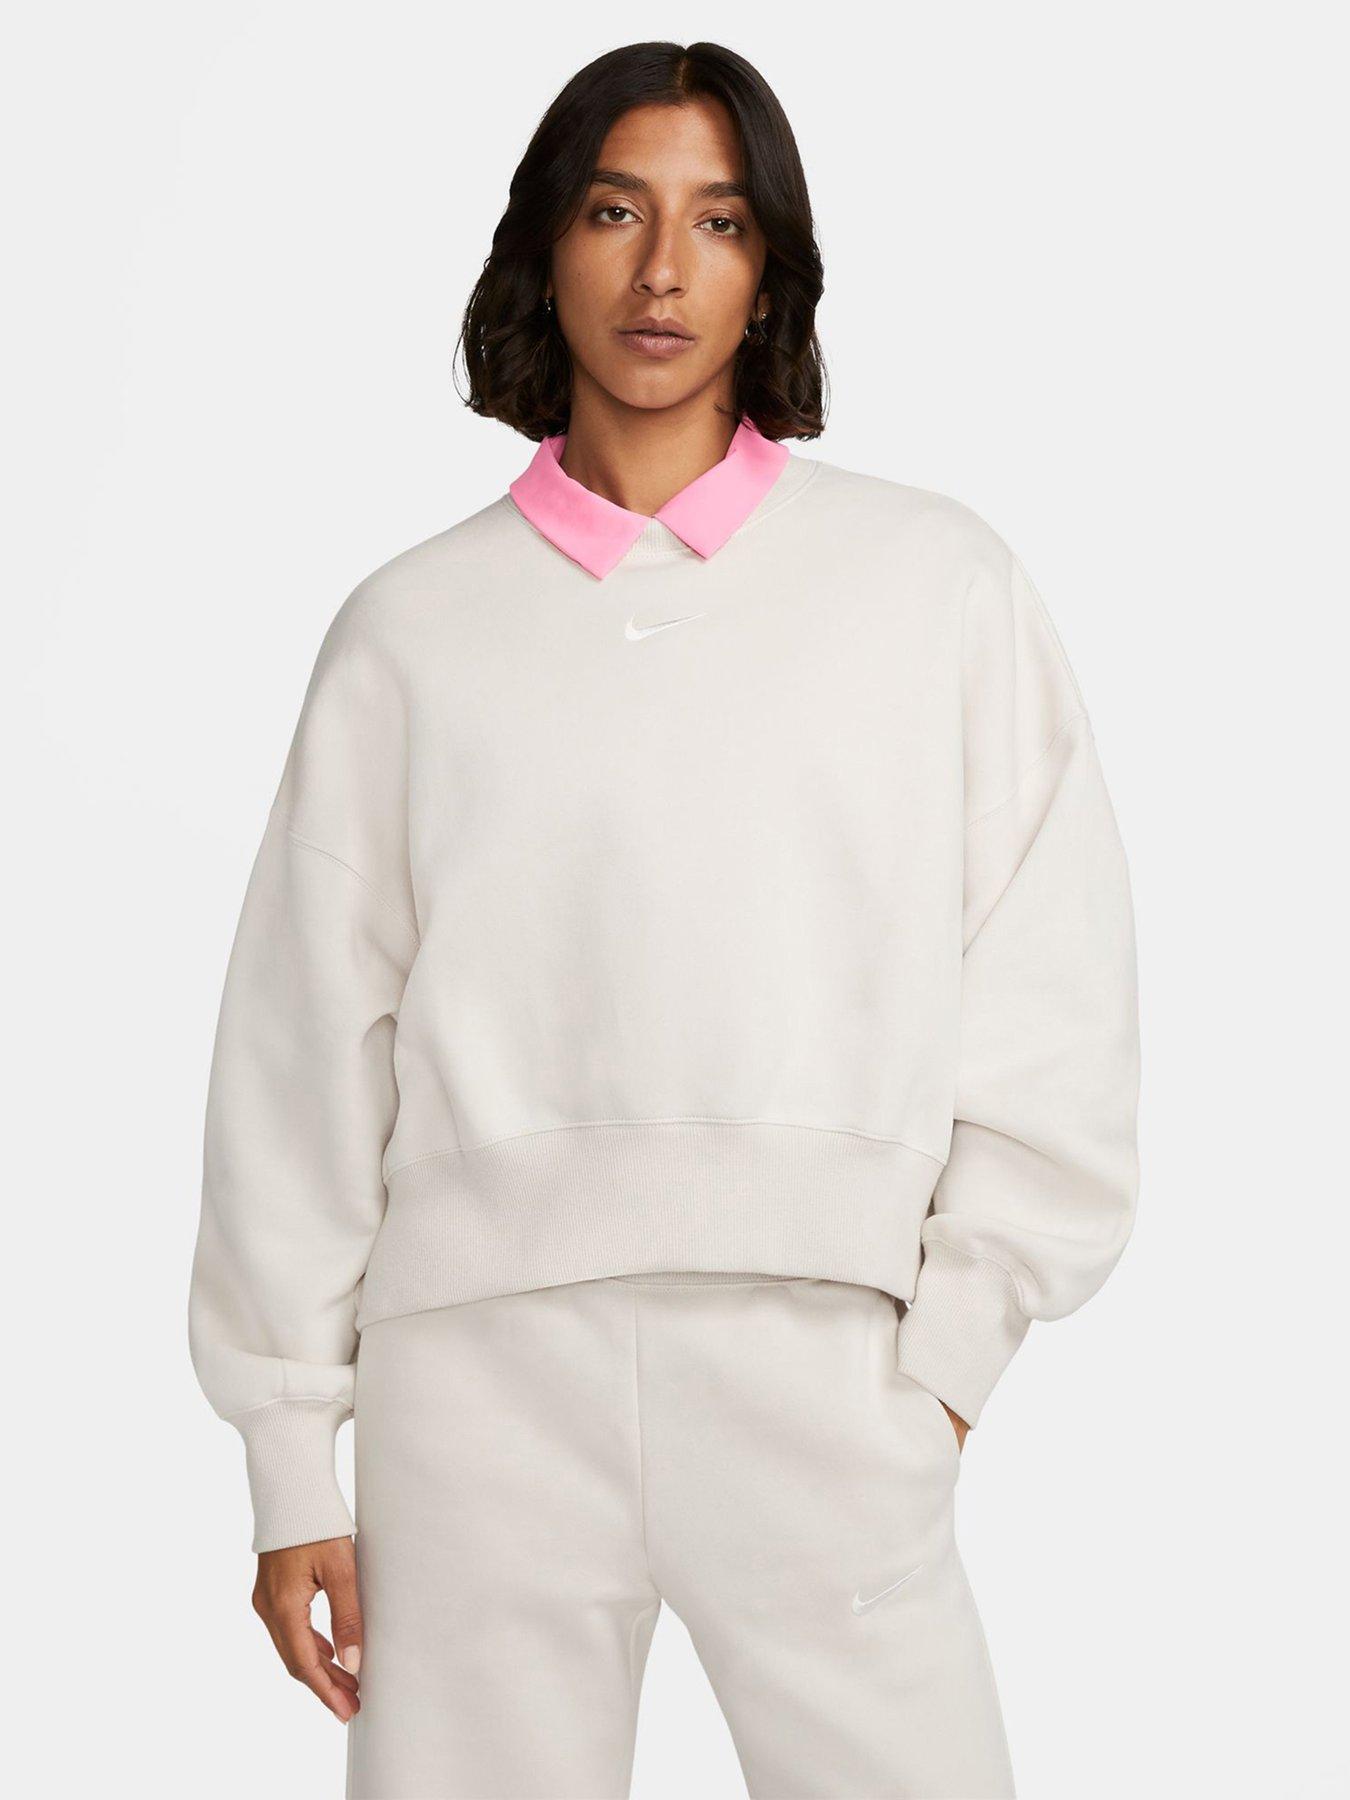 Oversized Fit Half-zip Sweatshirt - Light beige - Men